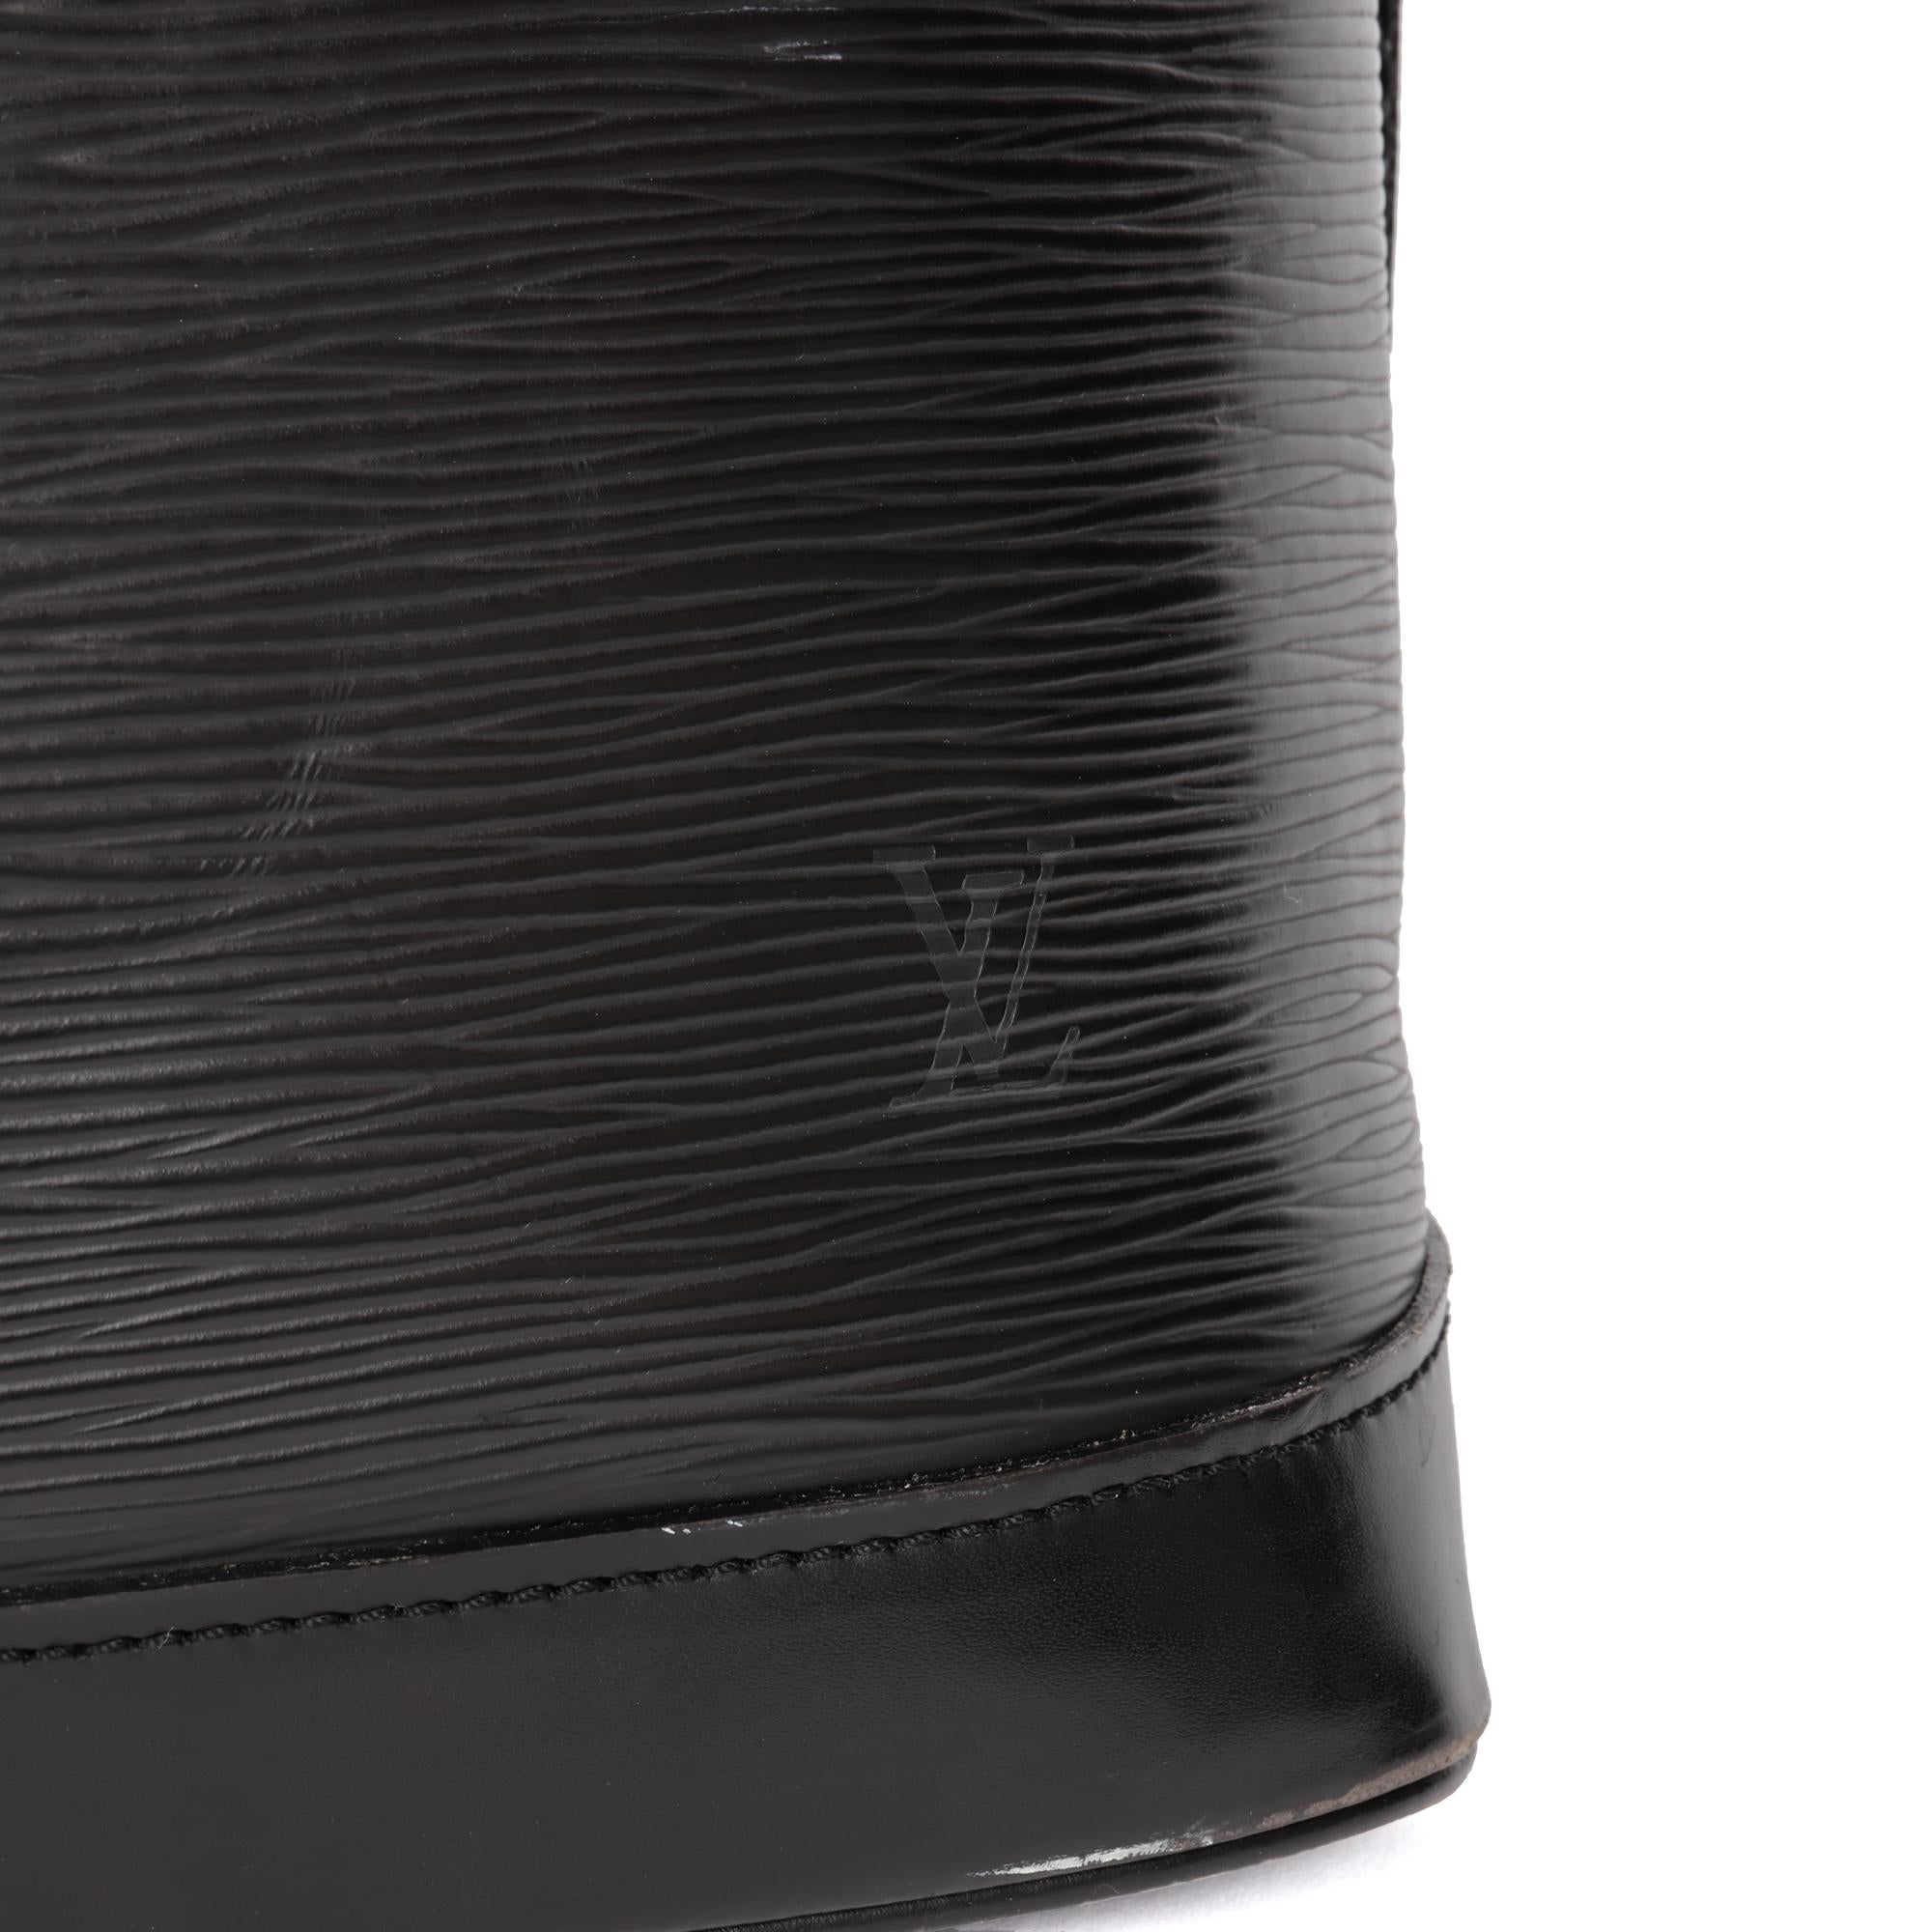 LOUIS VUITTON Black Epi Leather Alma PM 1